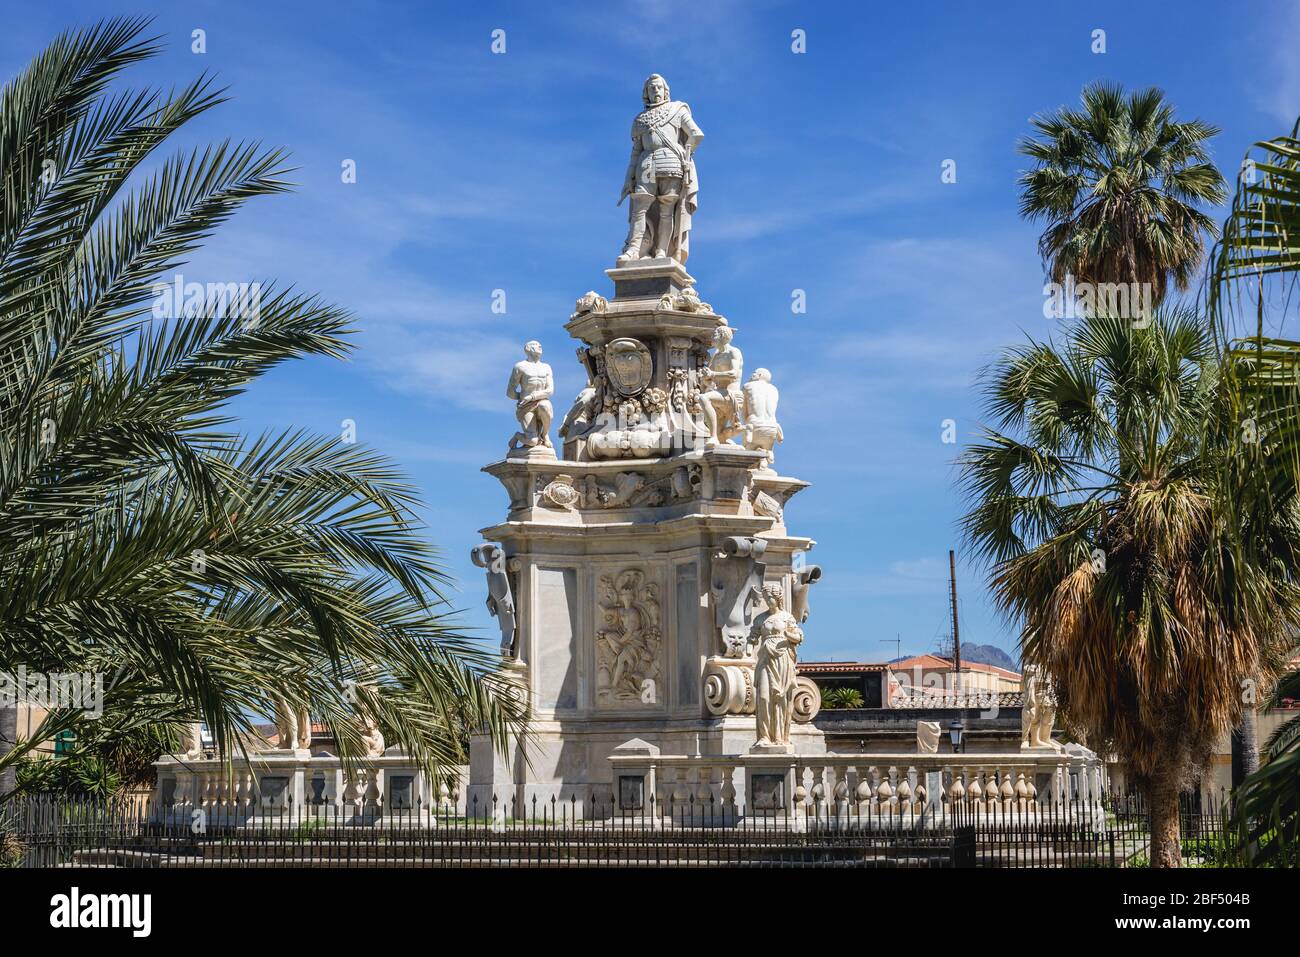 Teatro marmoreo monumento eretto nel 1662 di fronte a Palazzo Reale noto anche come Palazzo dei Normanni a Palermo, la capitale della regione Sicilia, Italia Foto Stock